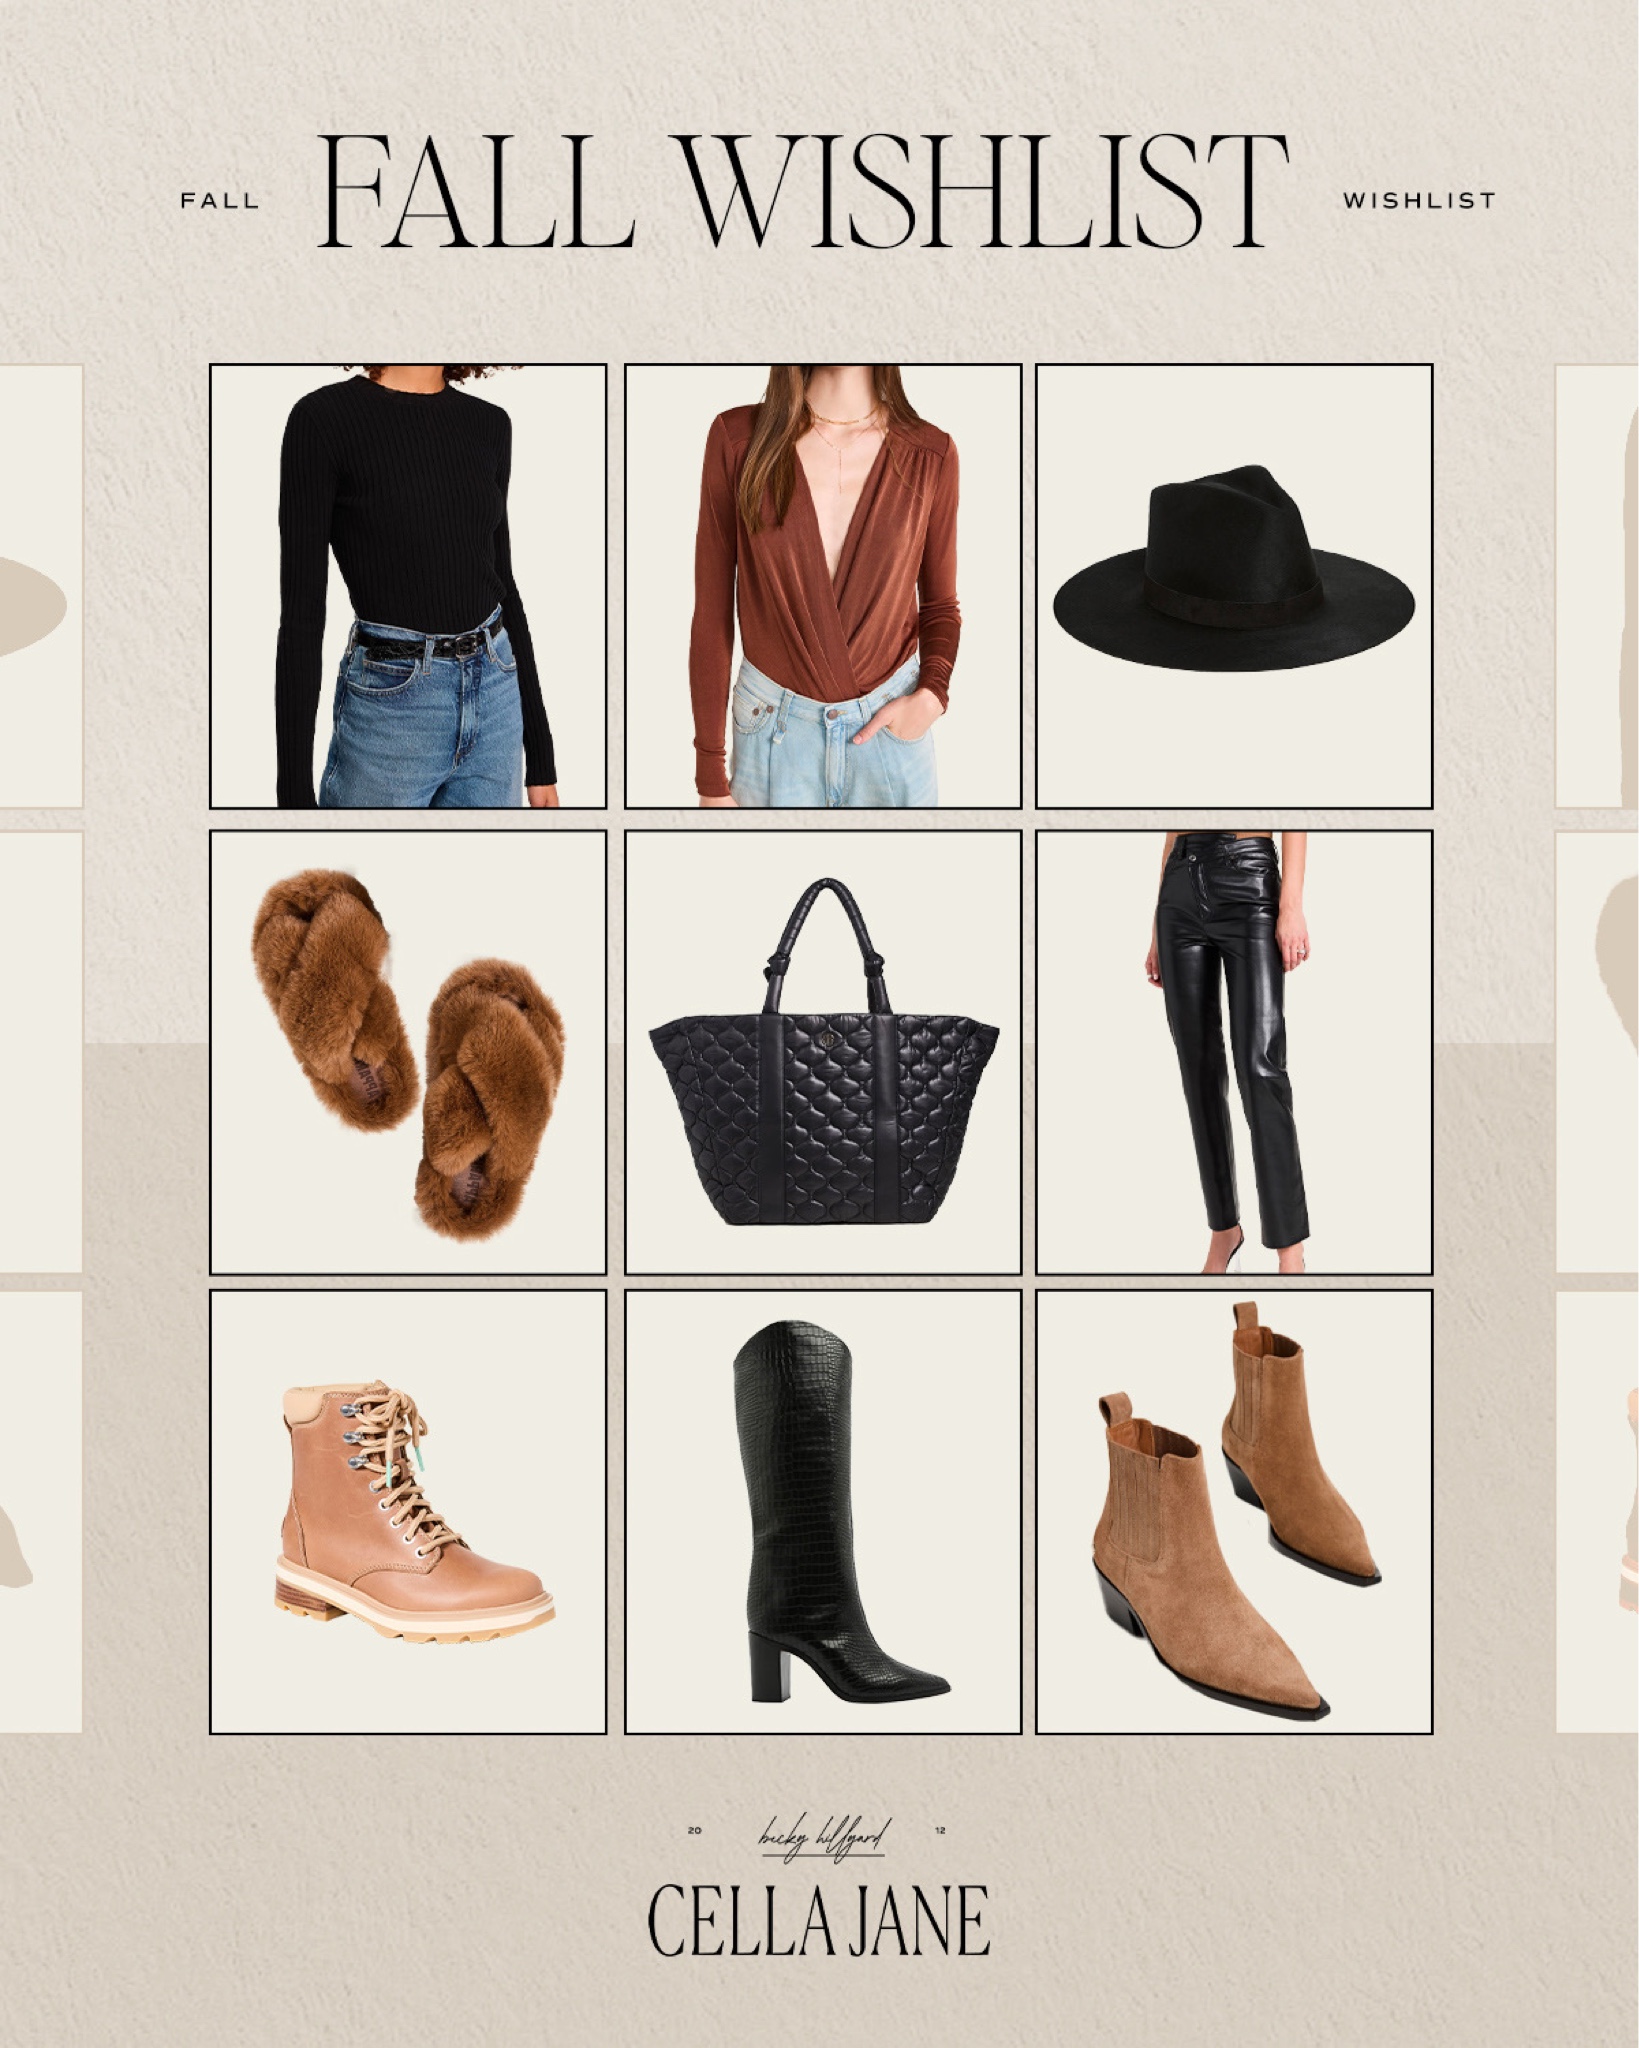 My Fall Fashion Wishlist